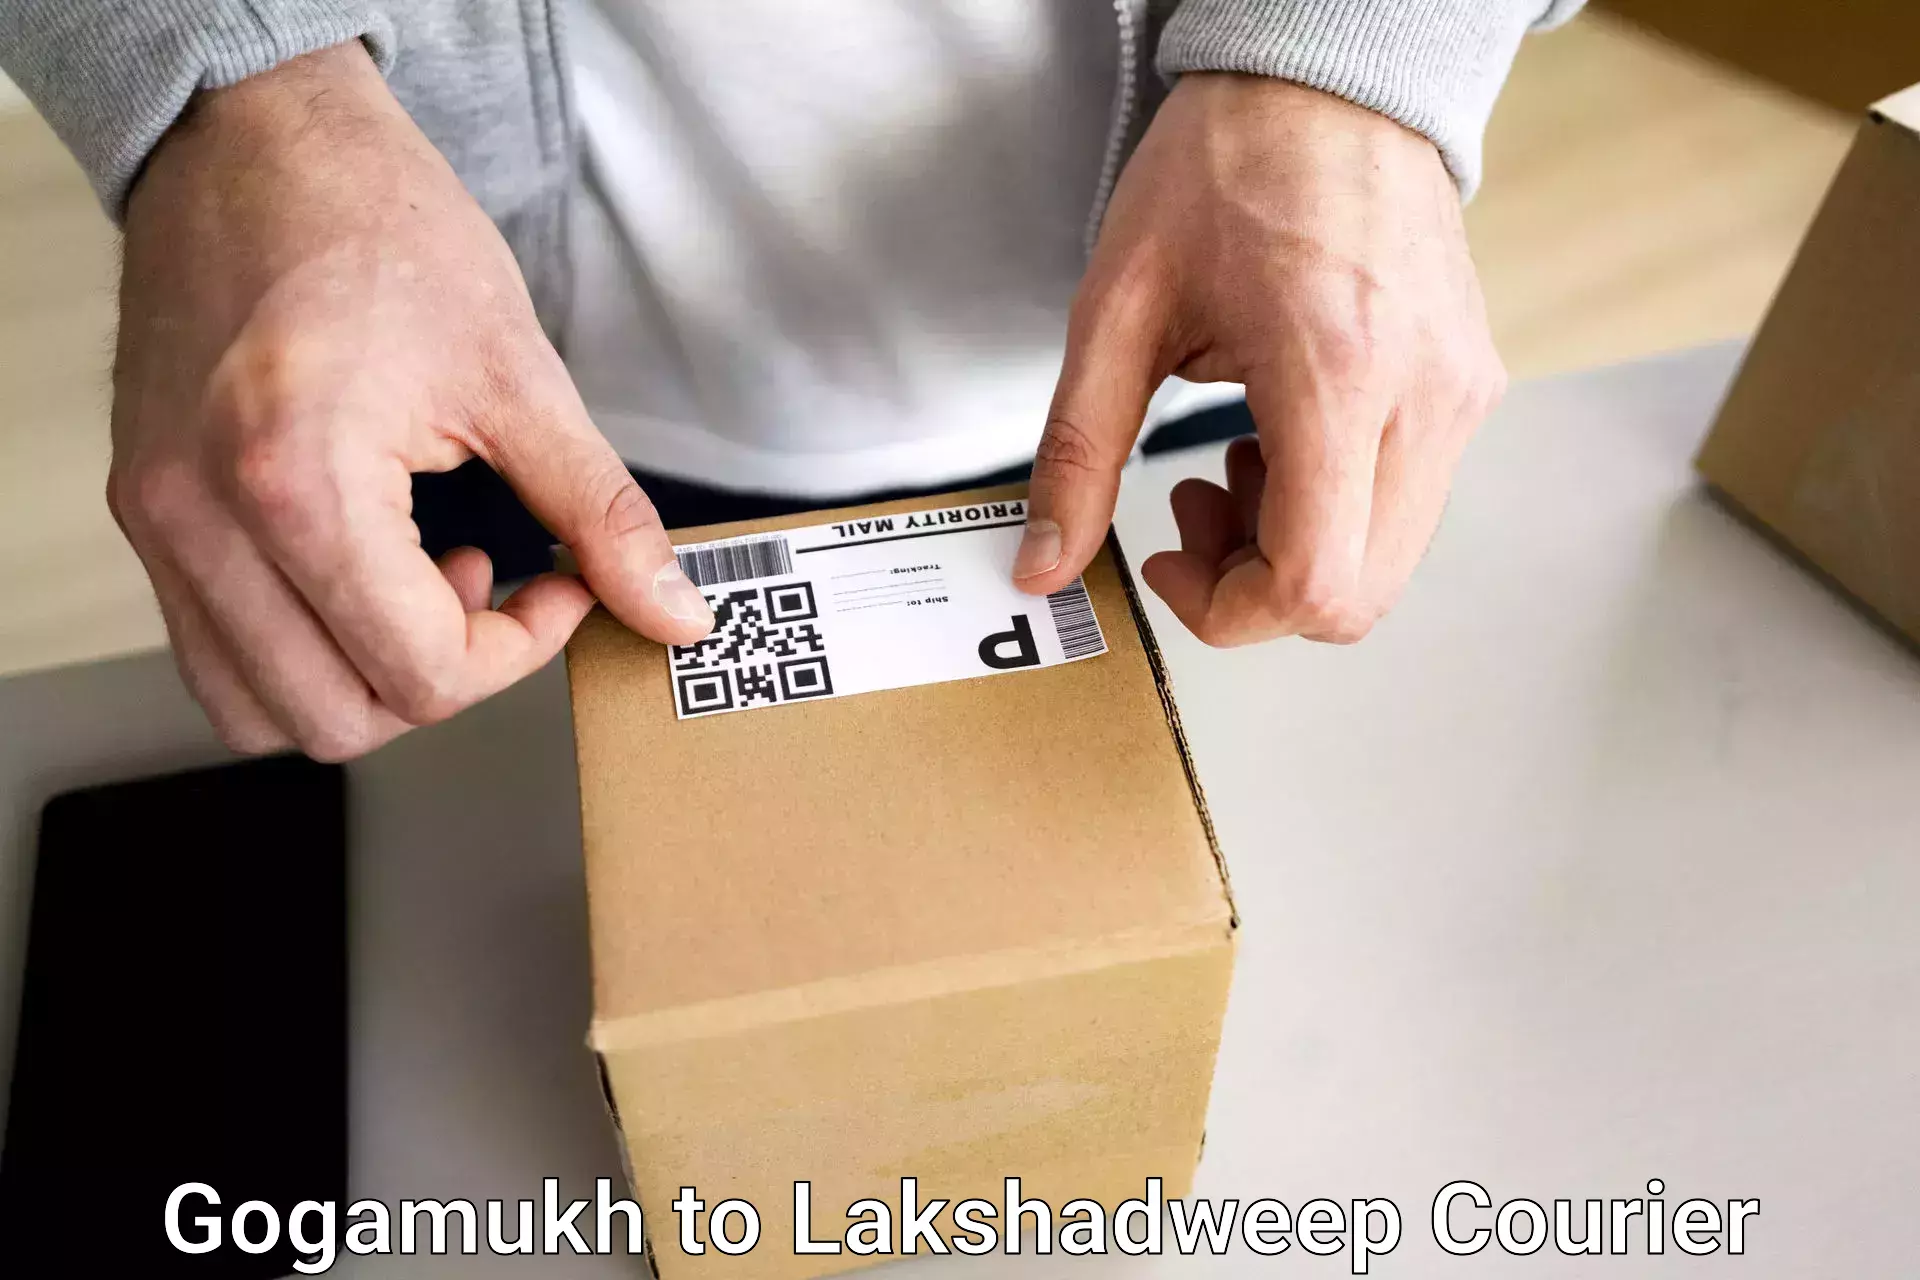 Luggage delivery system Gogamukh to Lakshadweep